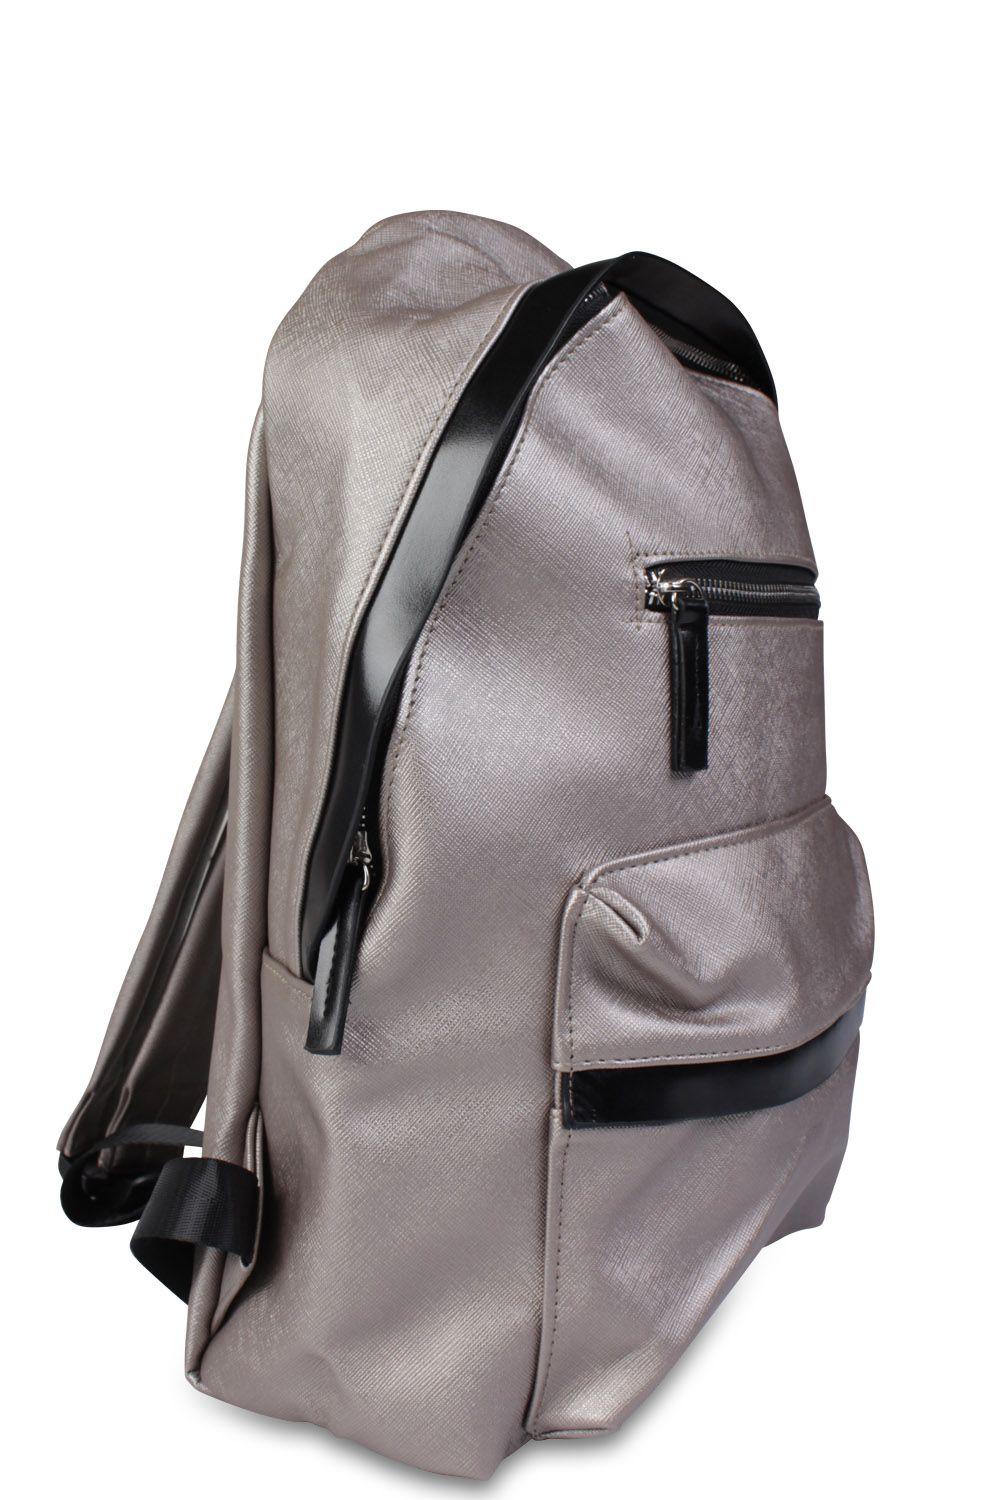 Рюкзак Multibrand, размер Единый школа, цвет серый 184-bronse - фото 2